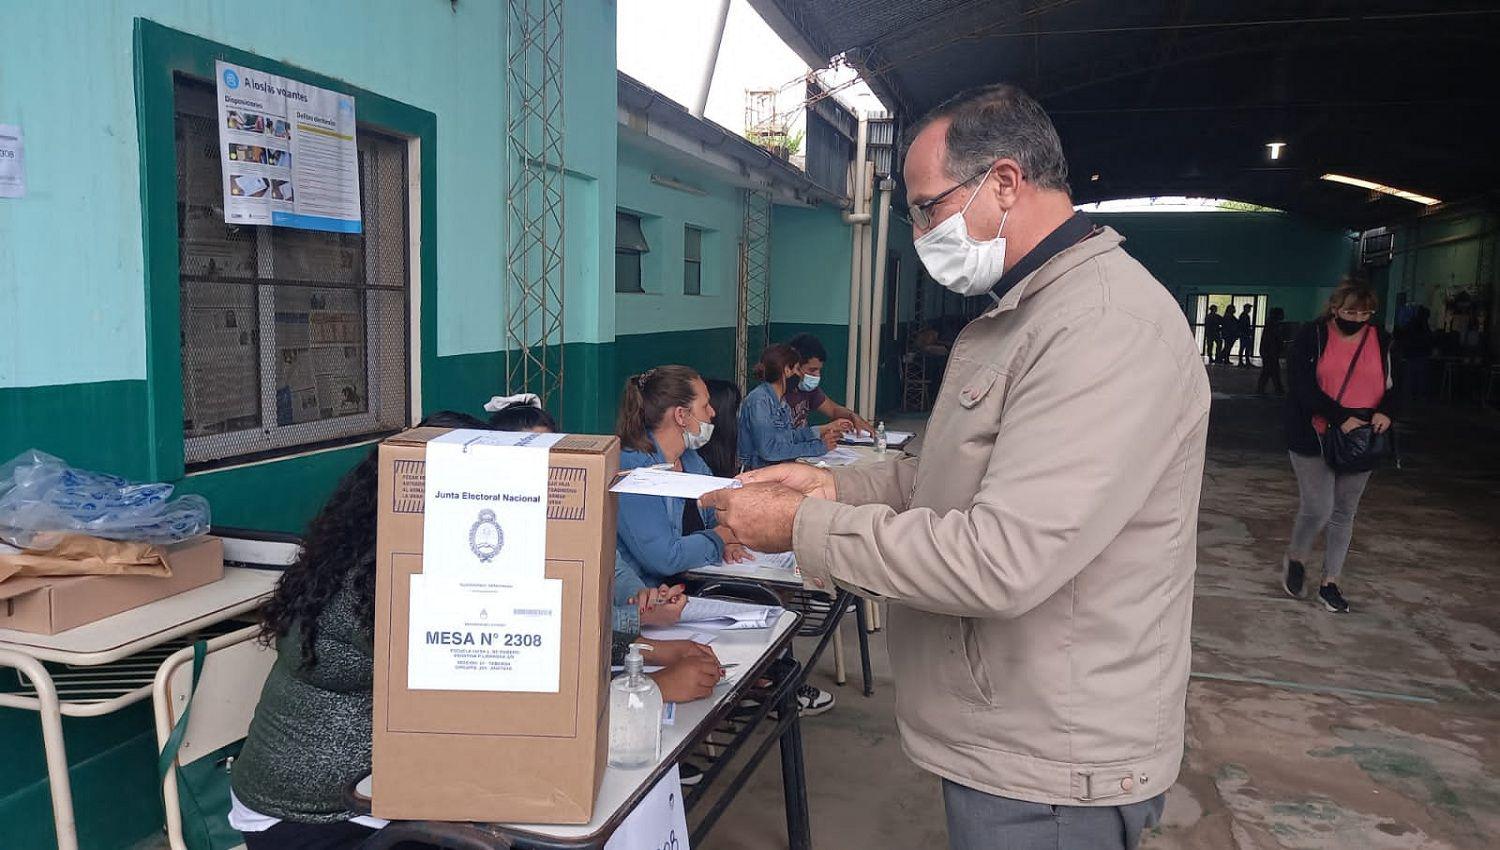 Monsentildeor Joseacute Luis Corral- ldquoDebemos concurrir a votar para fortalecer la democraciardquo